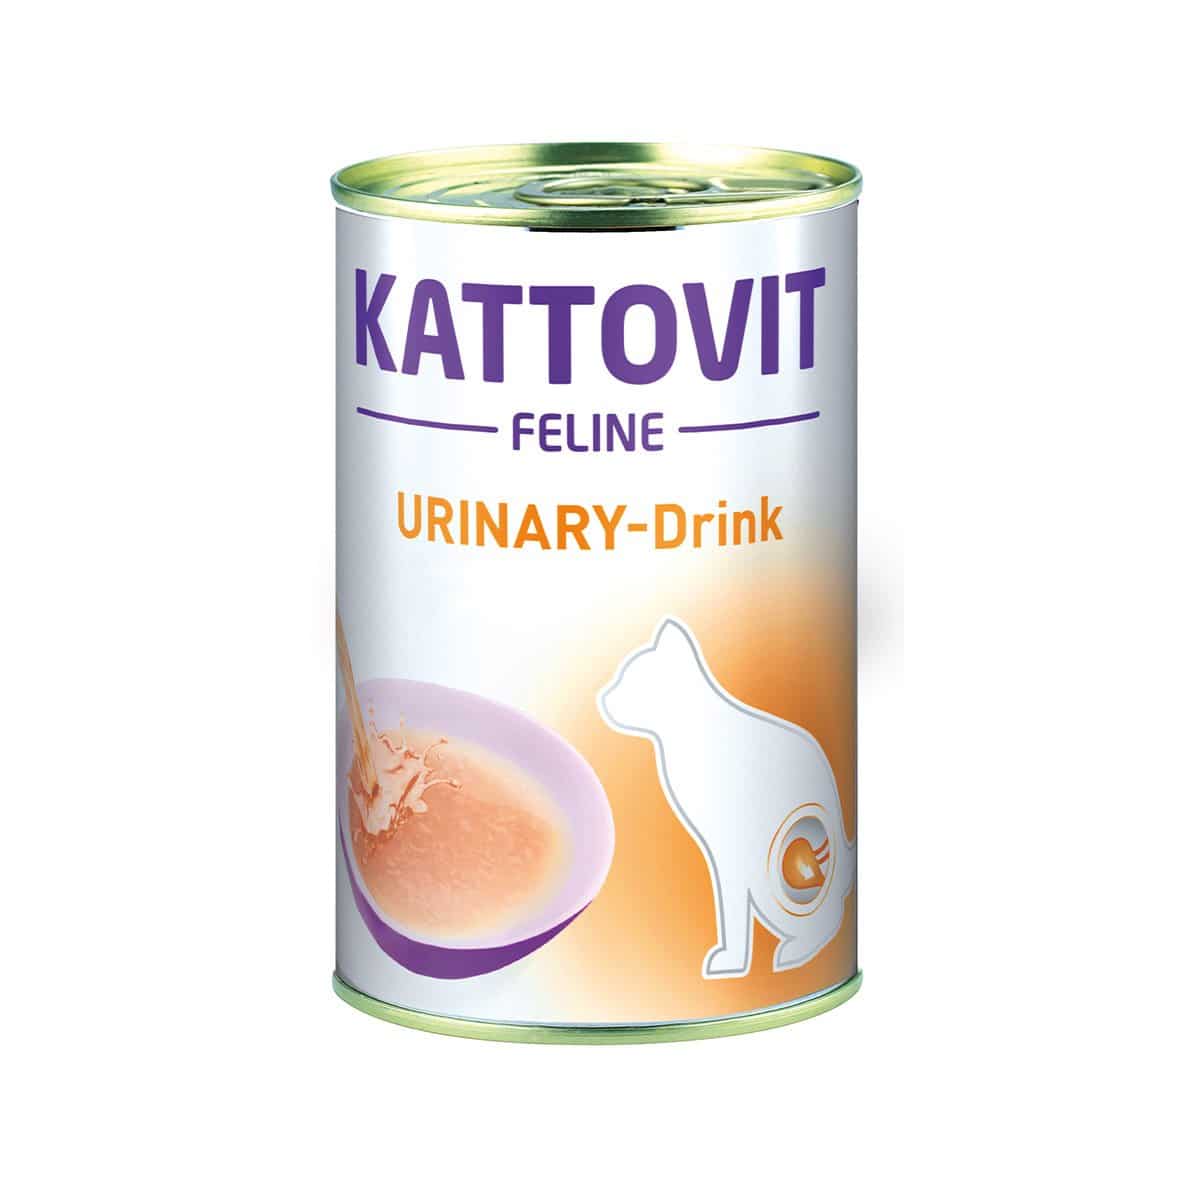 Kattovit Urinary-Drink 24x135ml